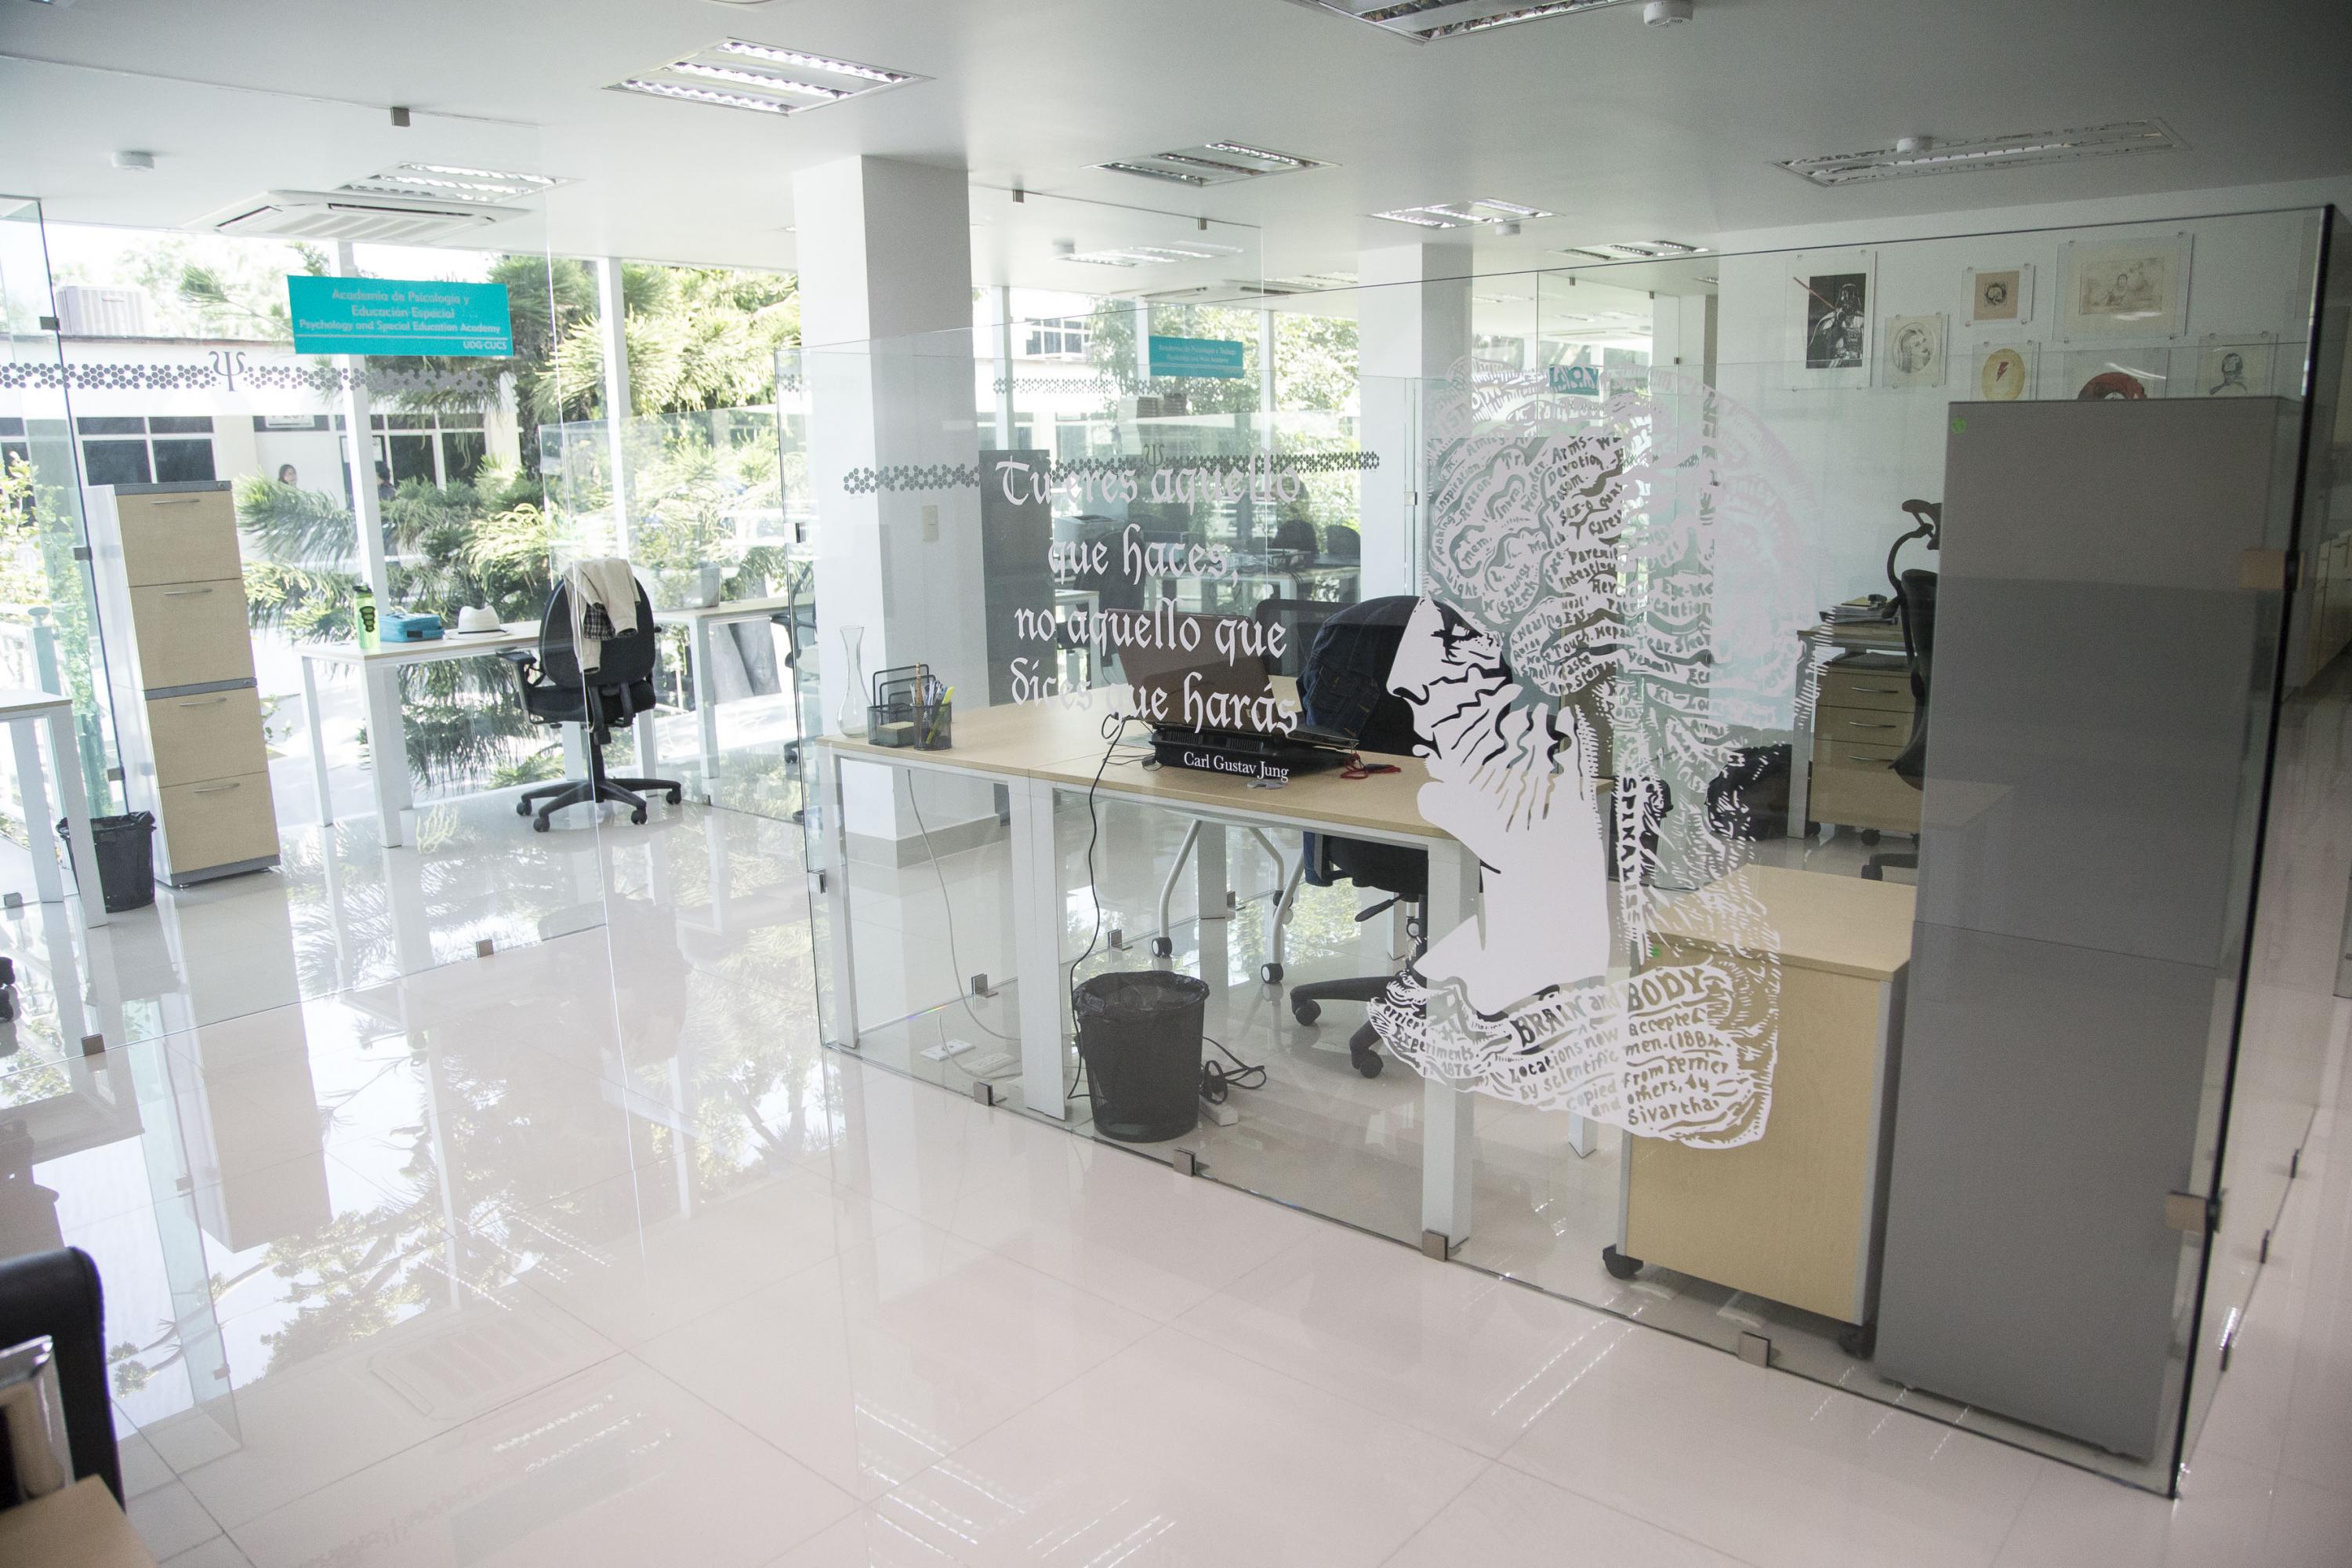 Oficinas y consultorios del CAPIB, los espacios estan divididos con muros de cristal